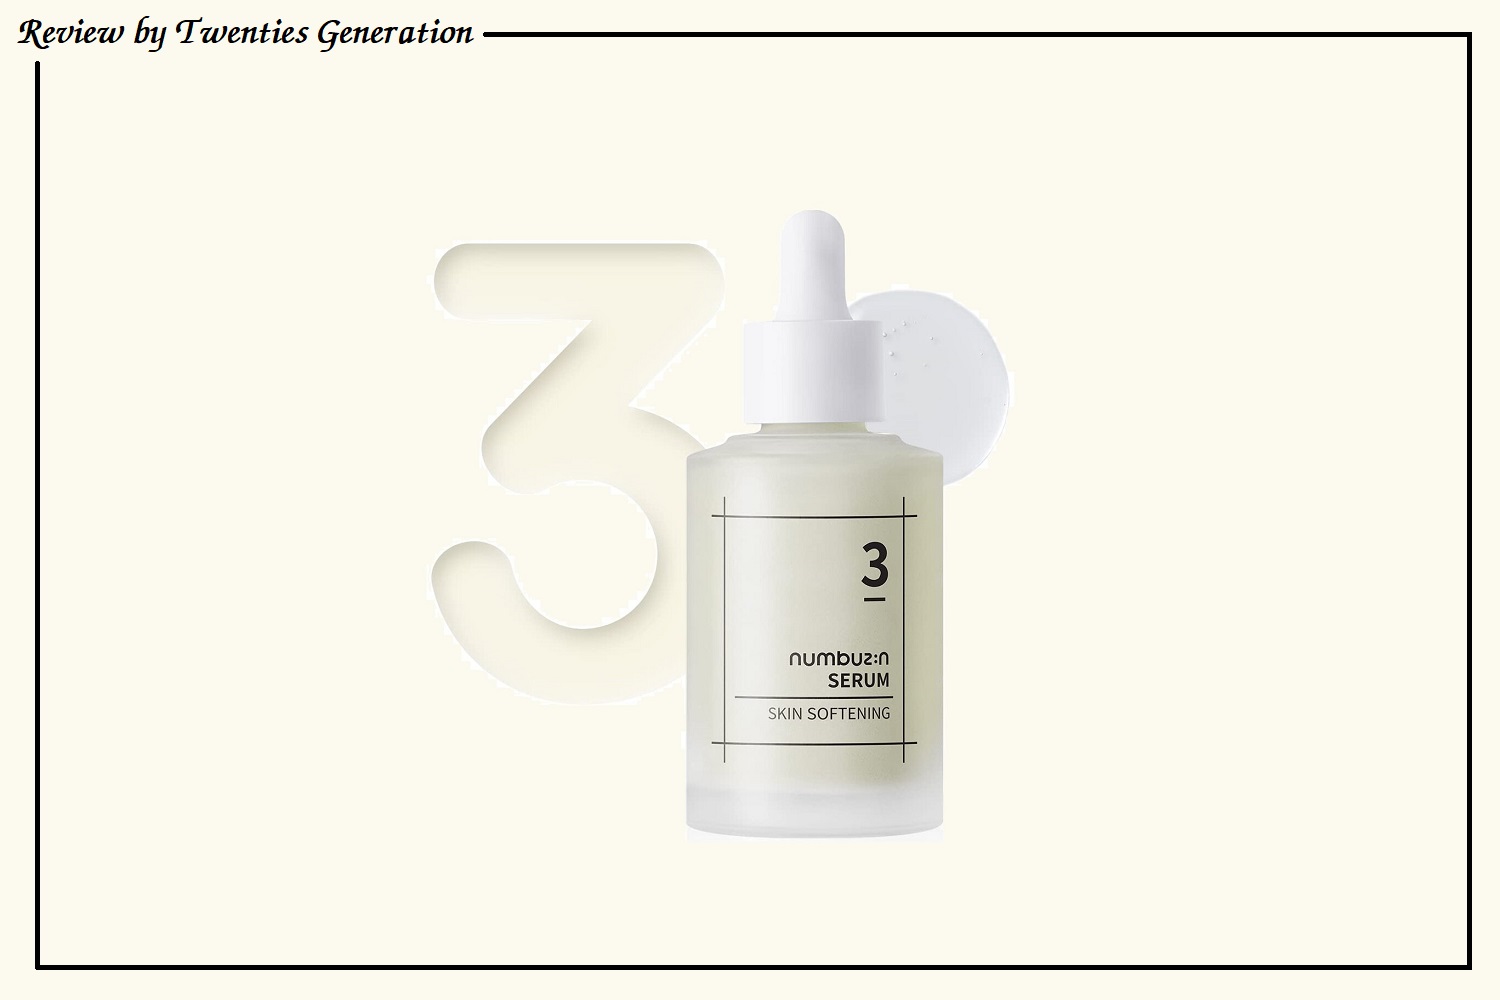 Numbuzin No.3 Skin Softening Serum Ingredients